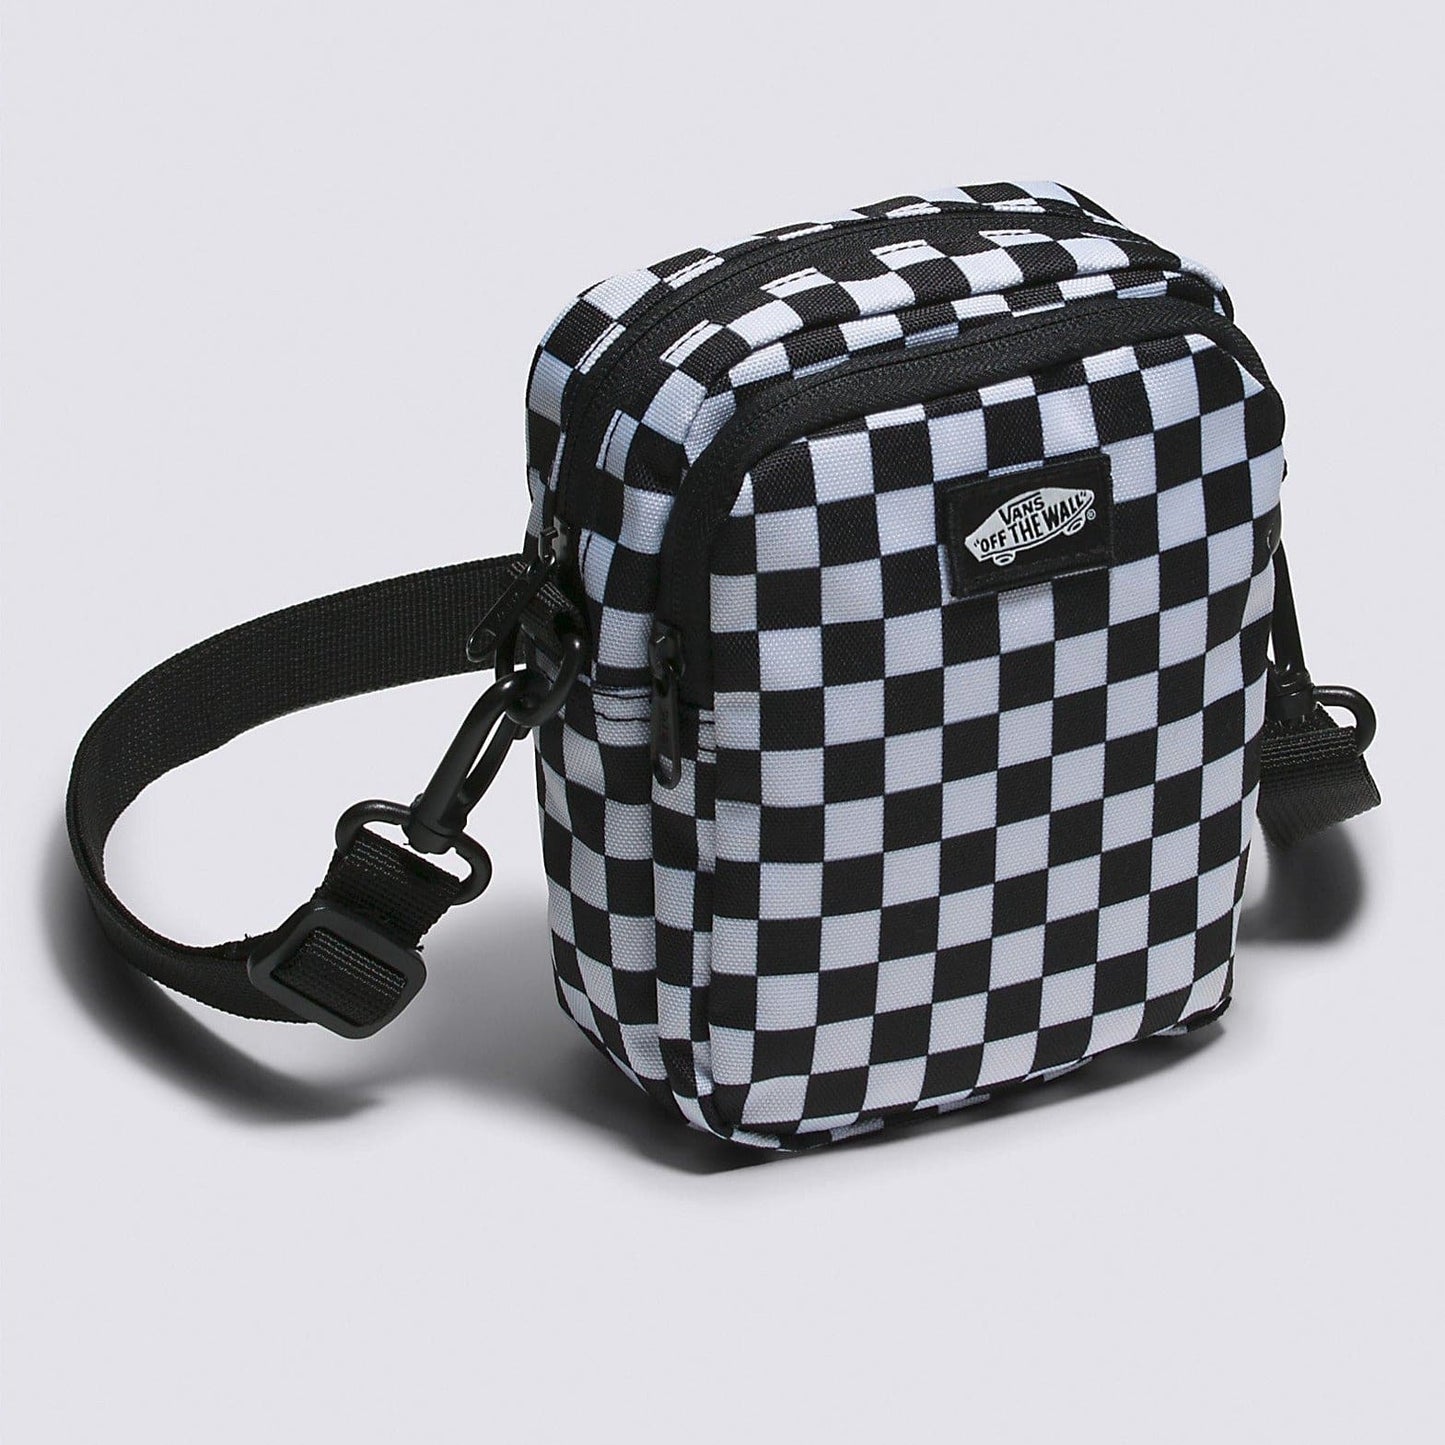 Vans | Go Getter Crossbody Bag - Black/White Checkerboard